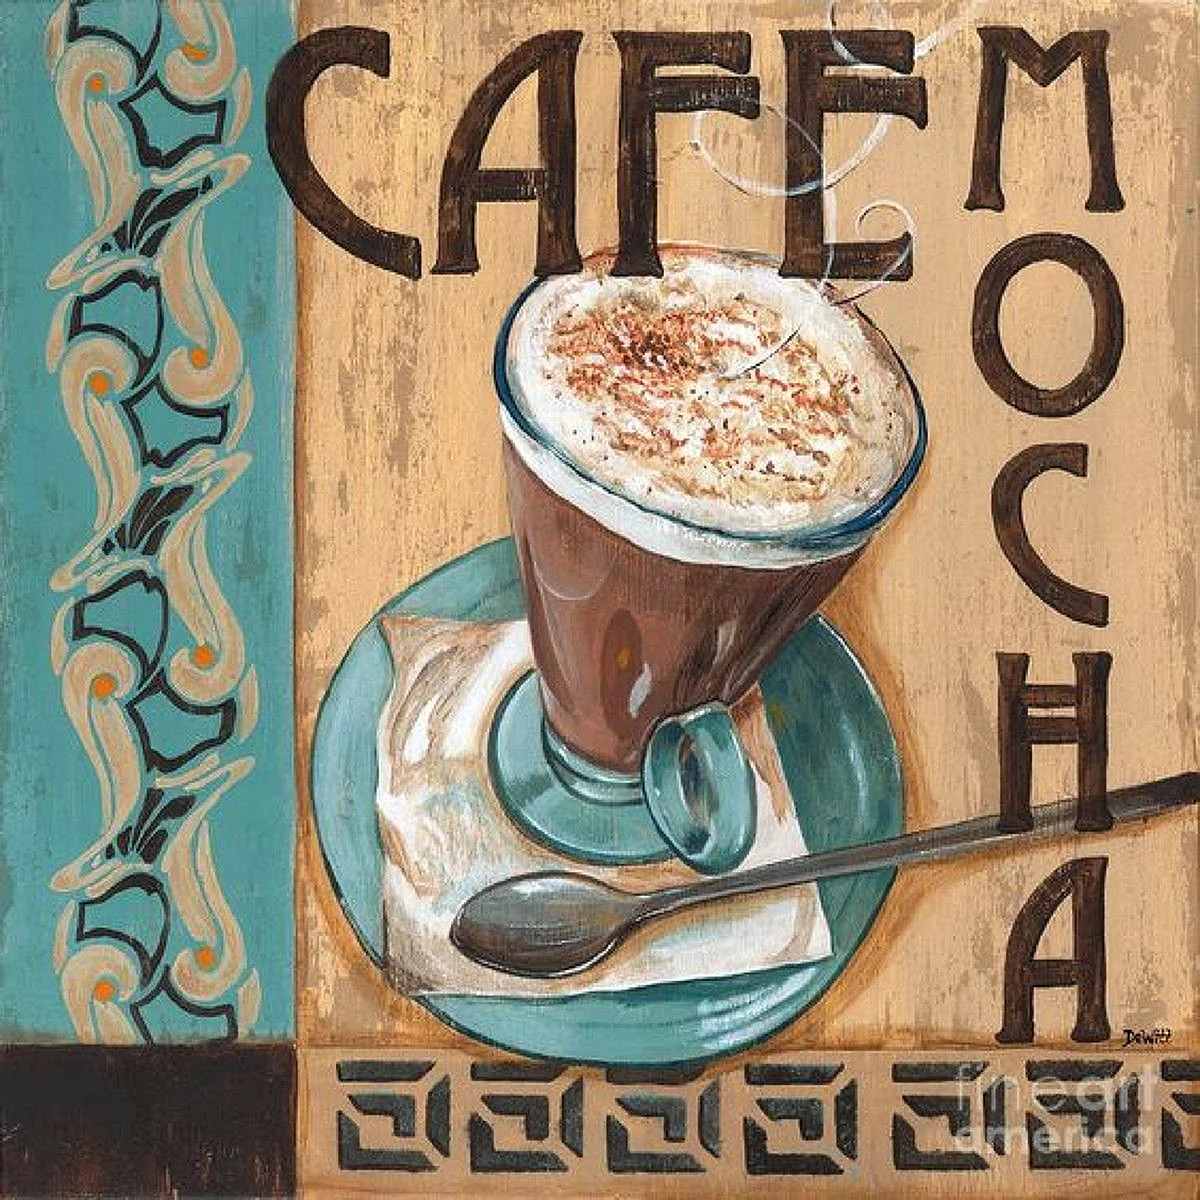 Плакат кофейни